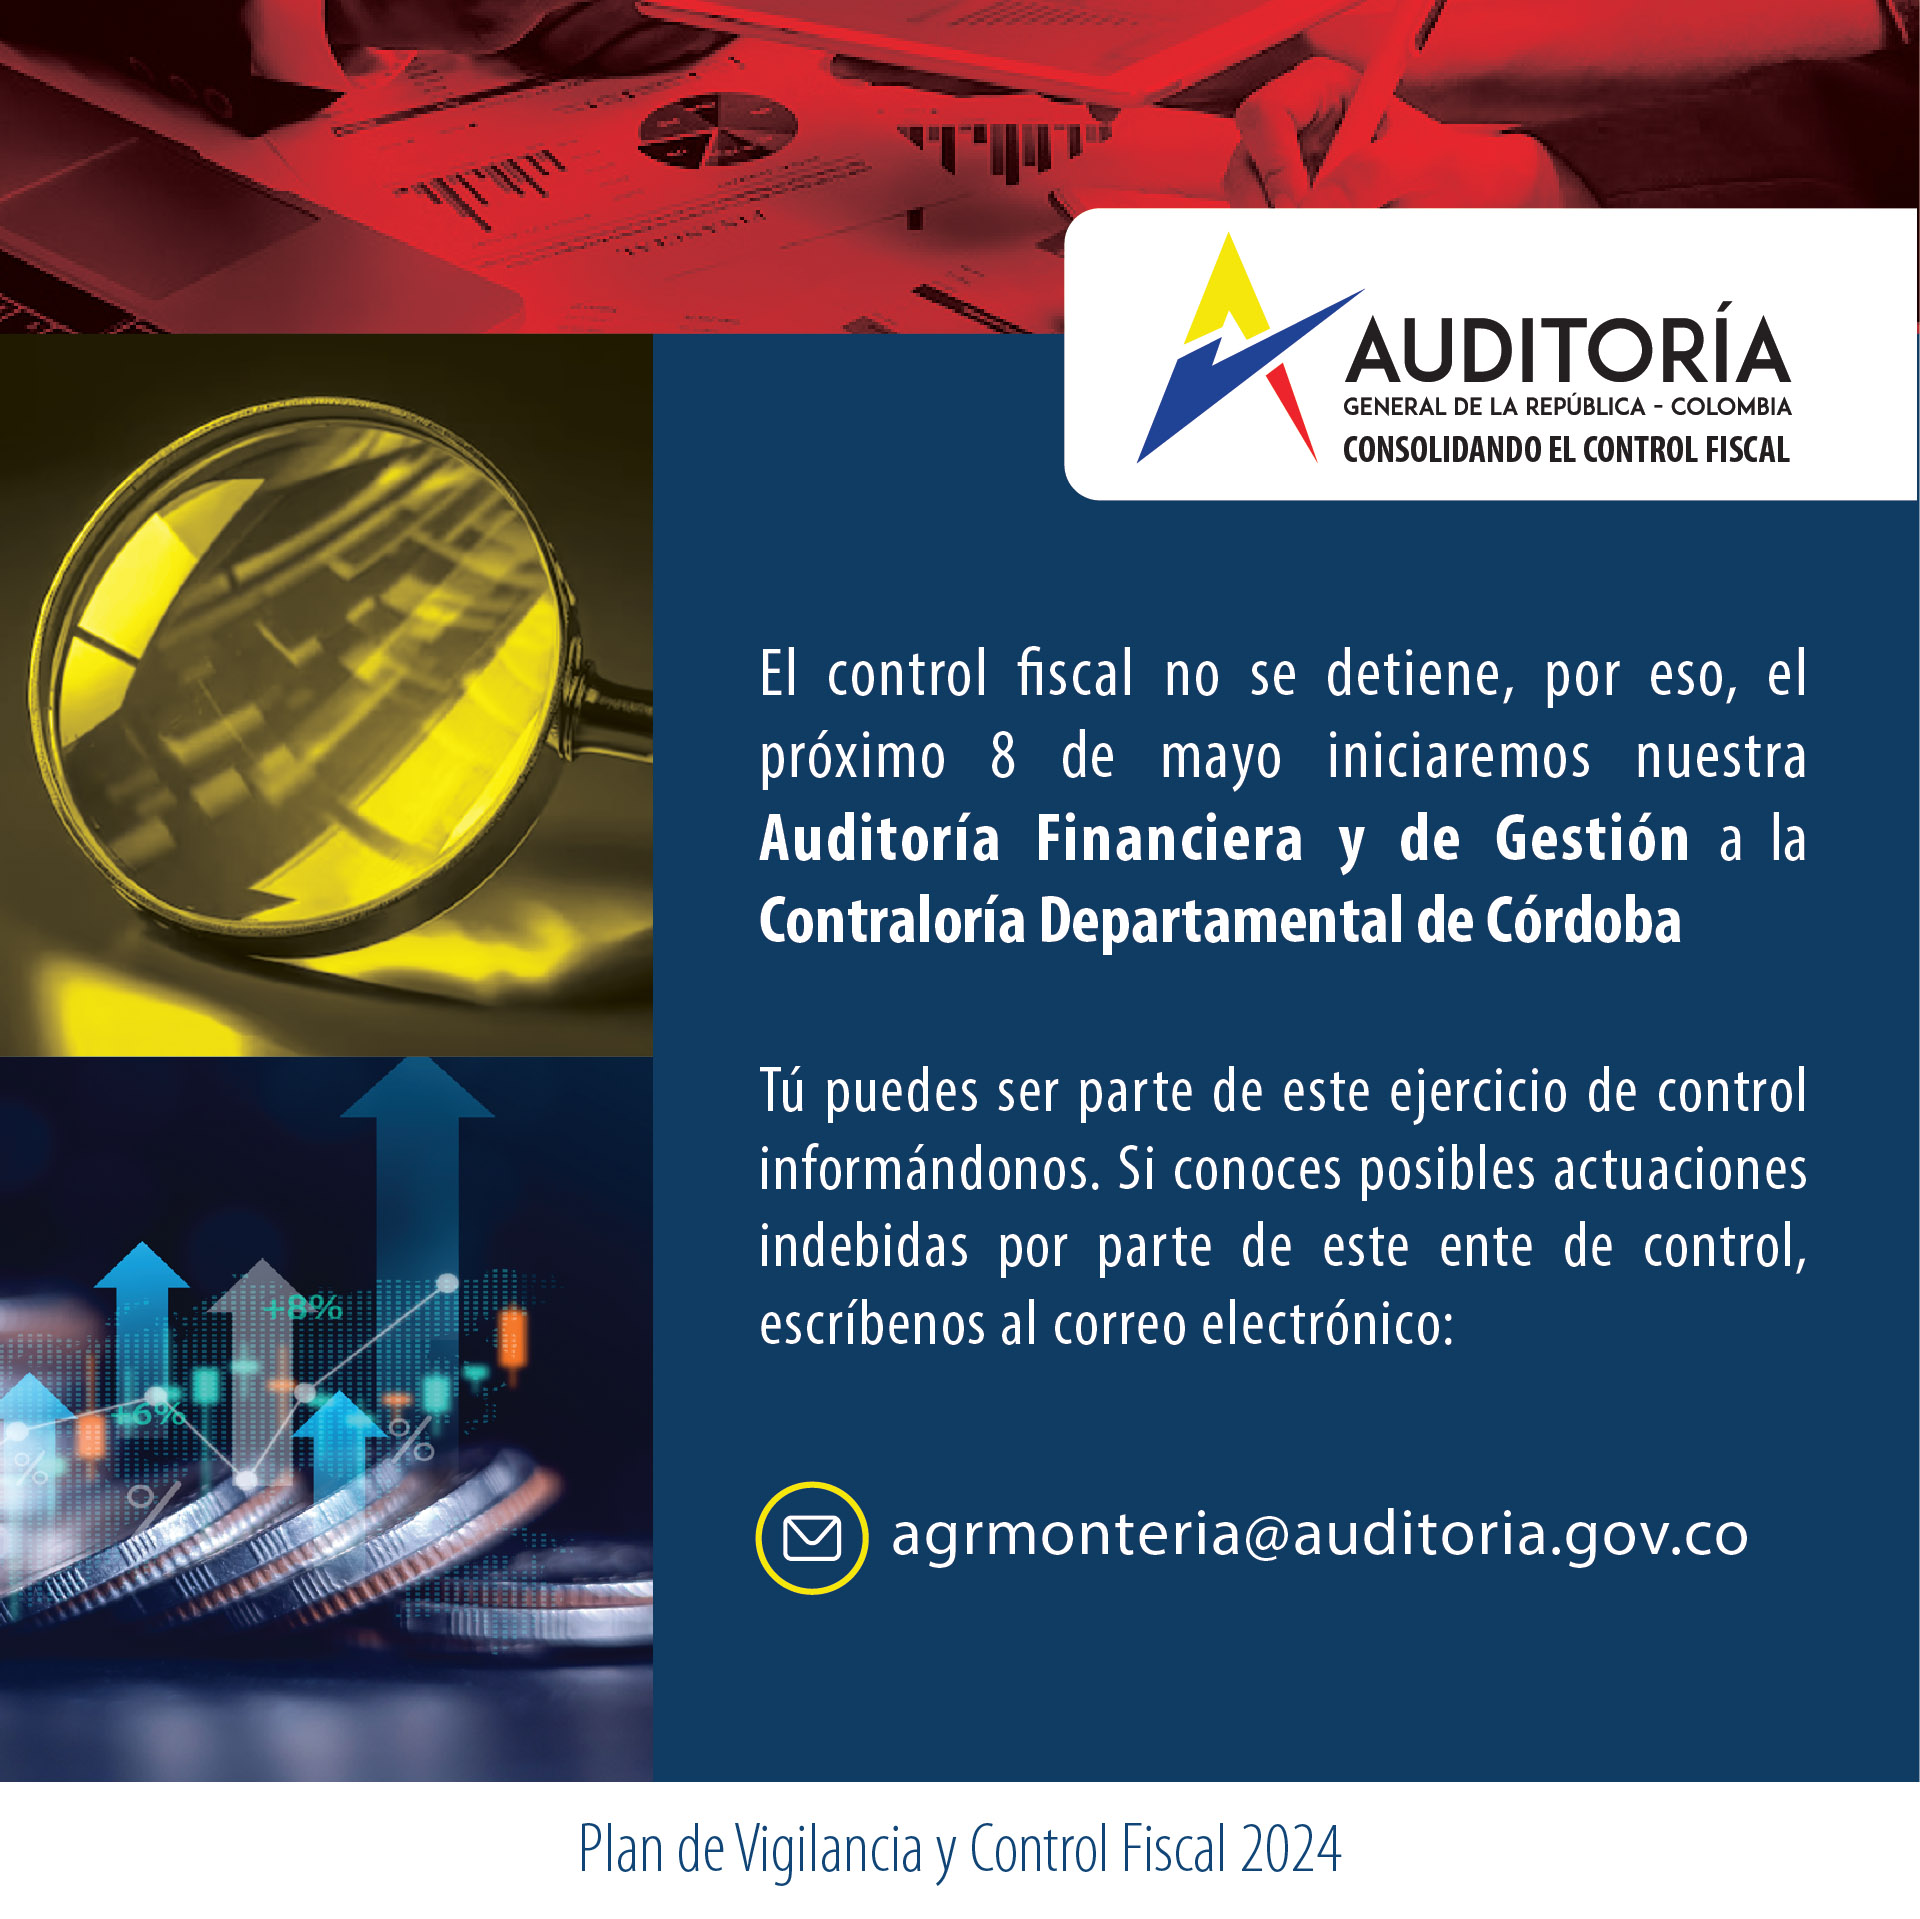 Invitación a ciudadanía a brindar información para Auditoría Financiera y de Gestión a Contraloría de Córdoba